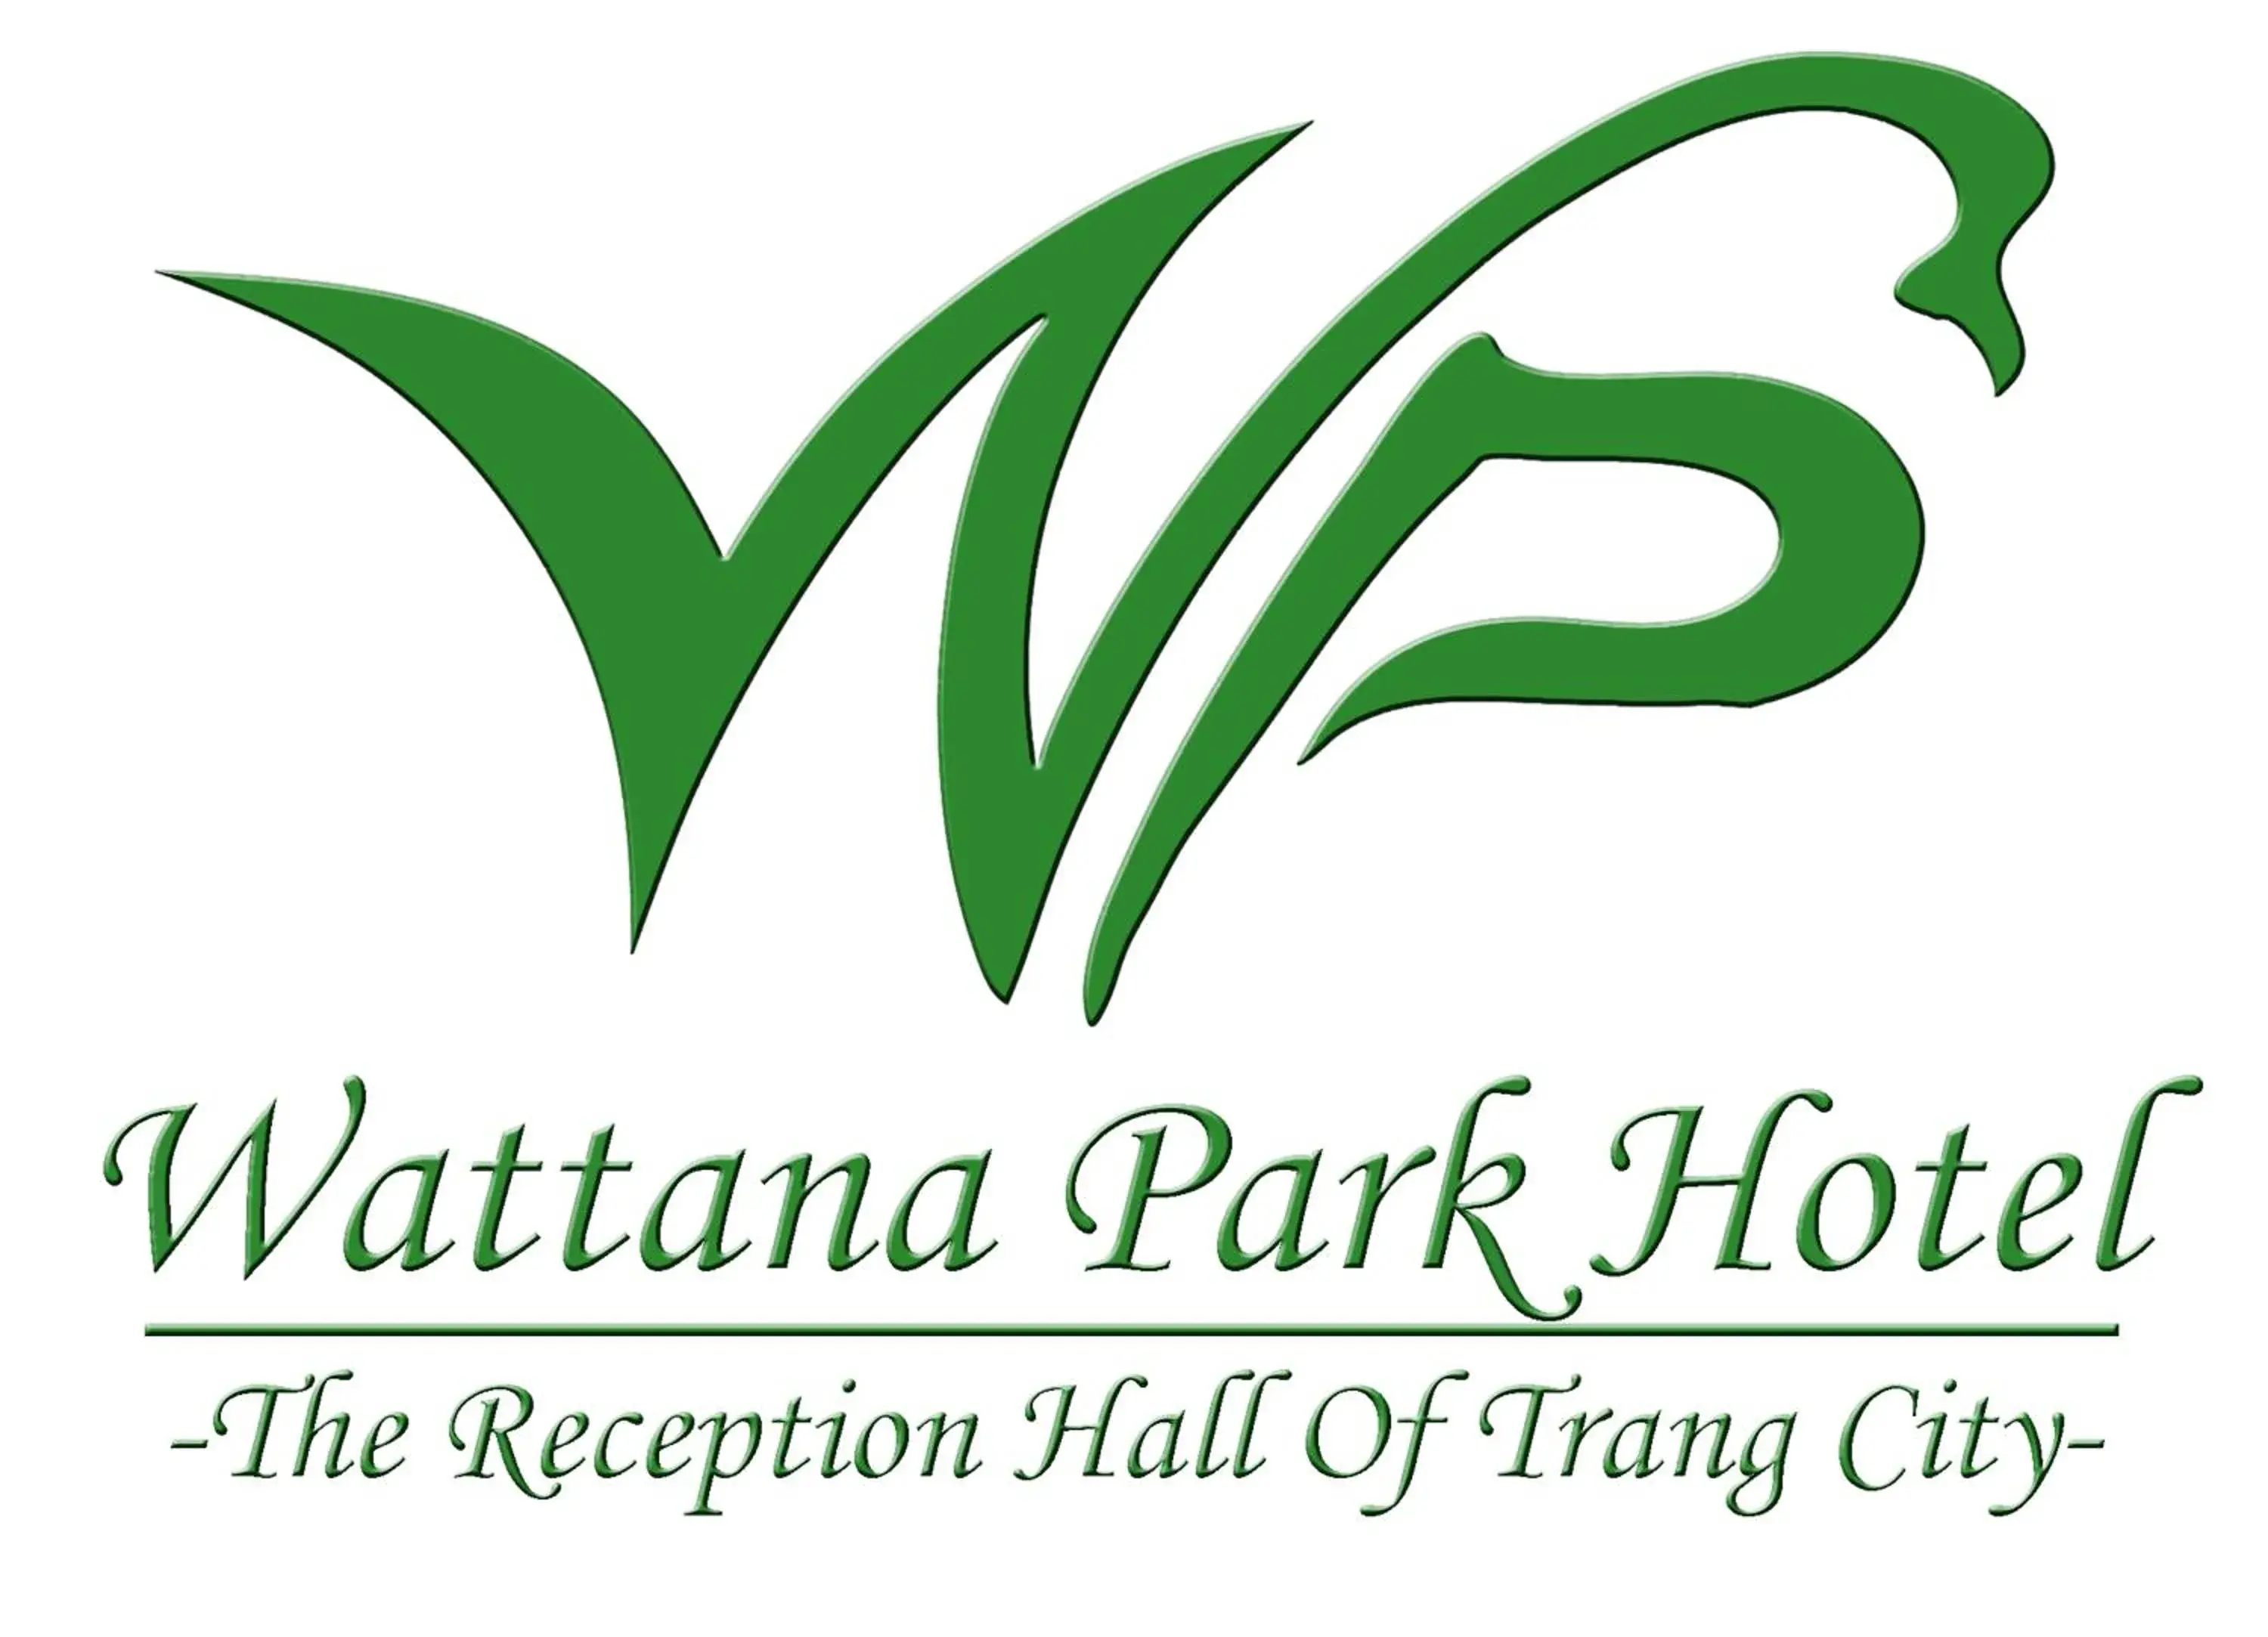 Lounge or bar, Logo/Certificate/Sign/Award in Wattana Park Hotel